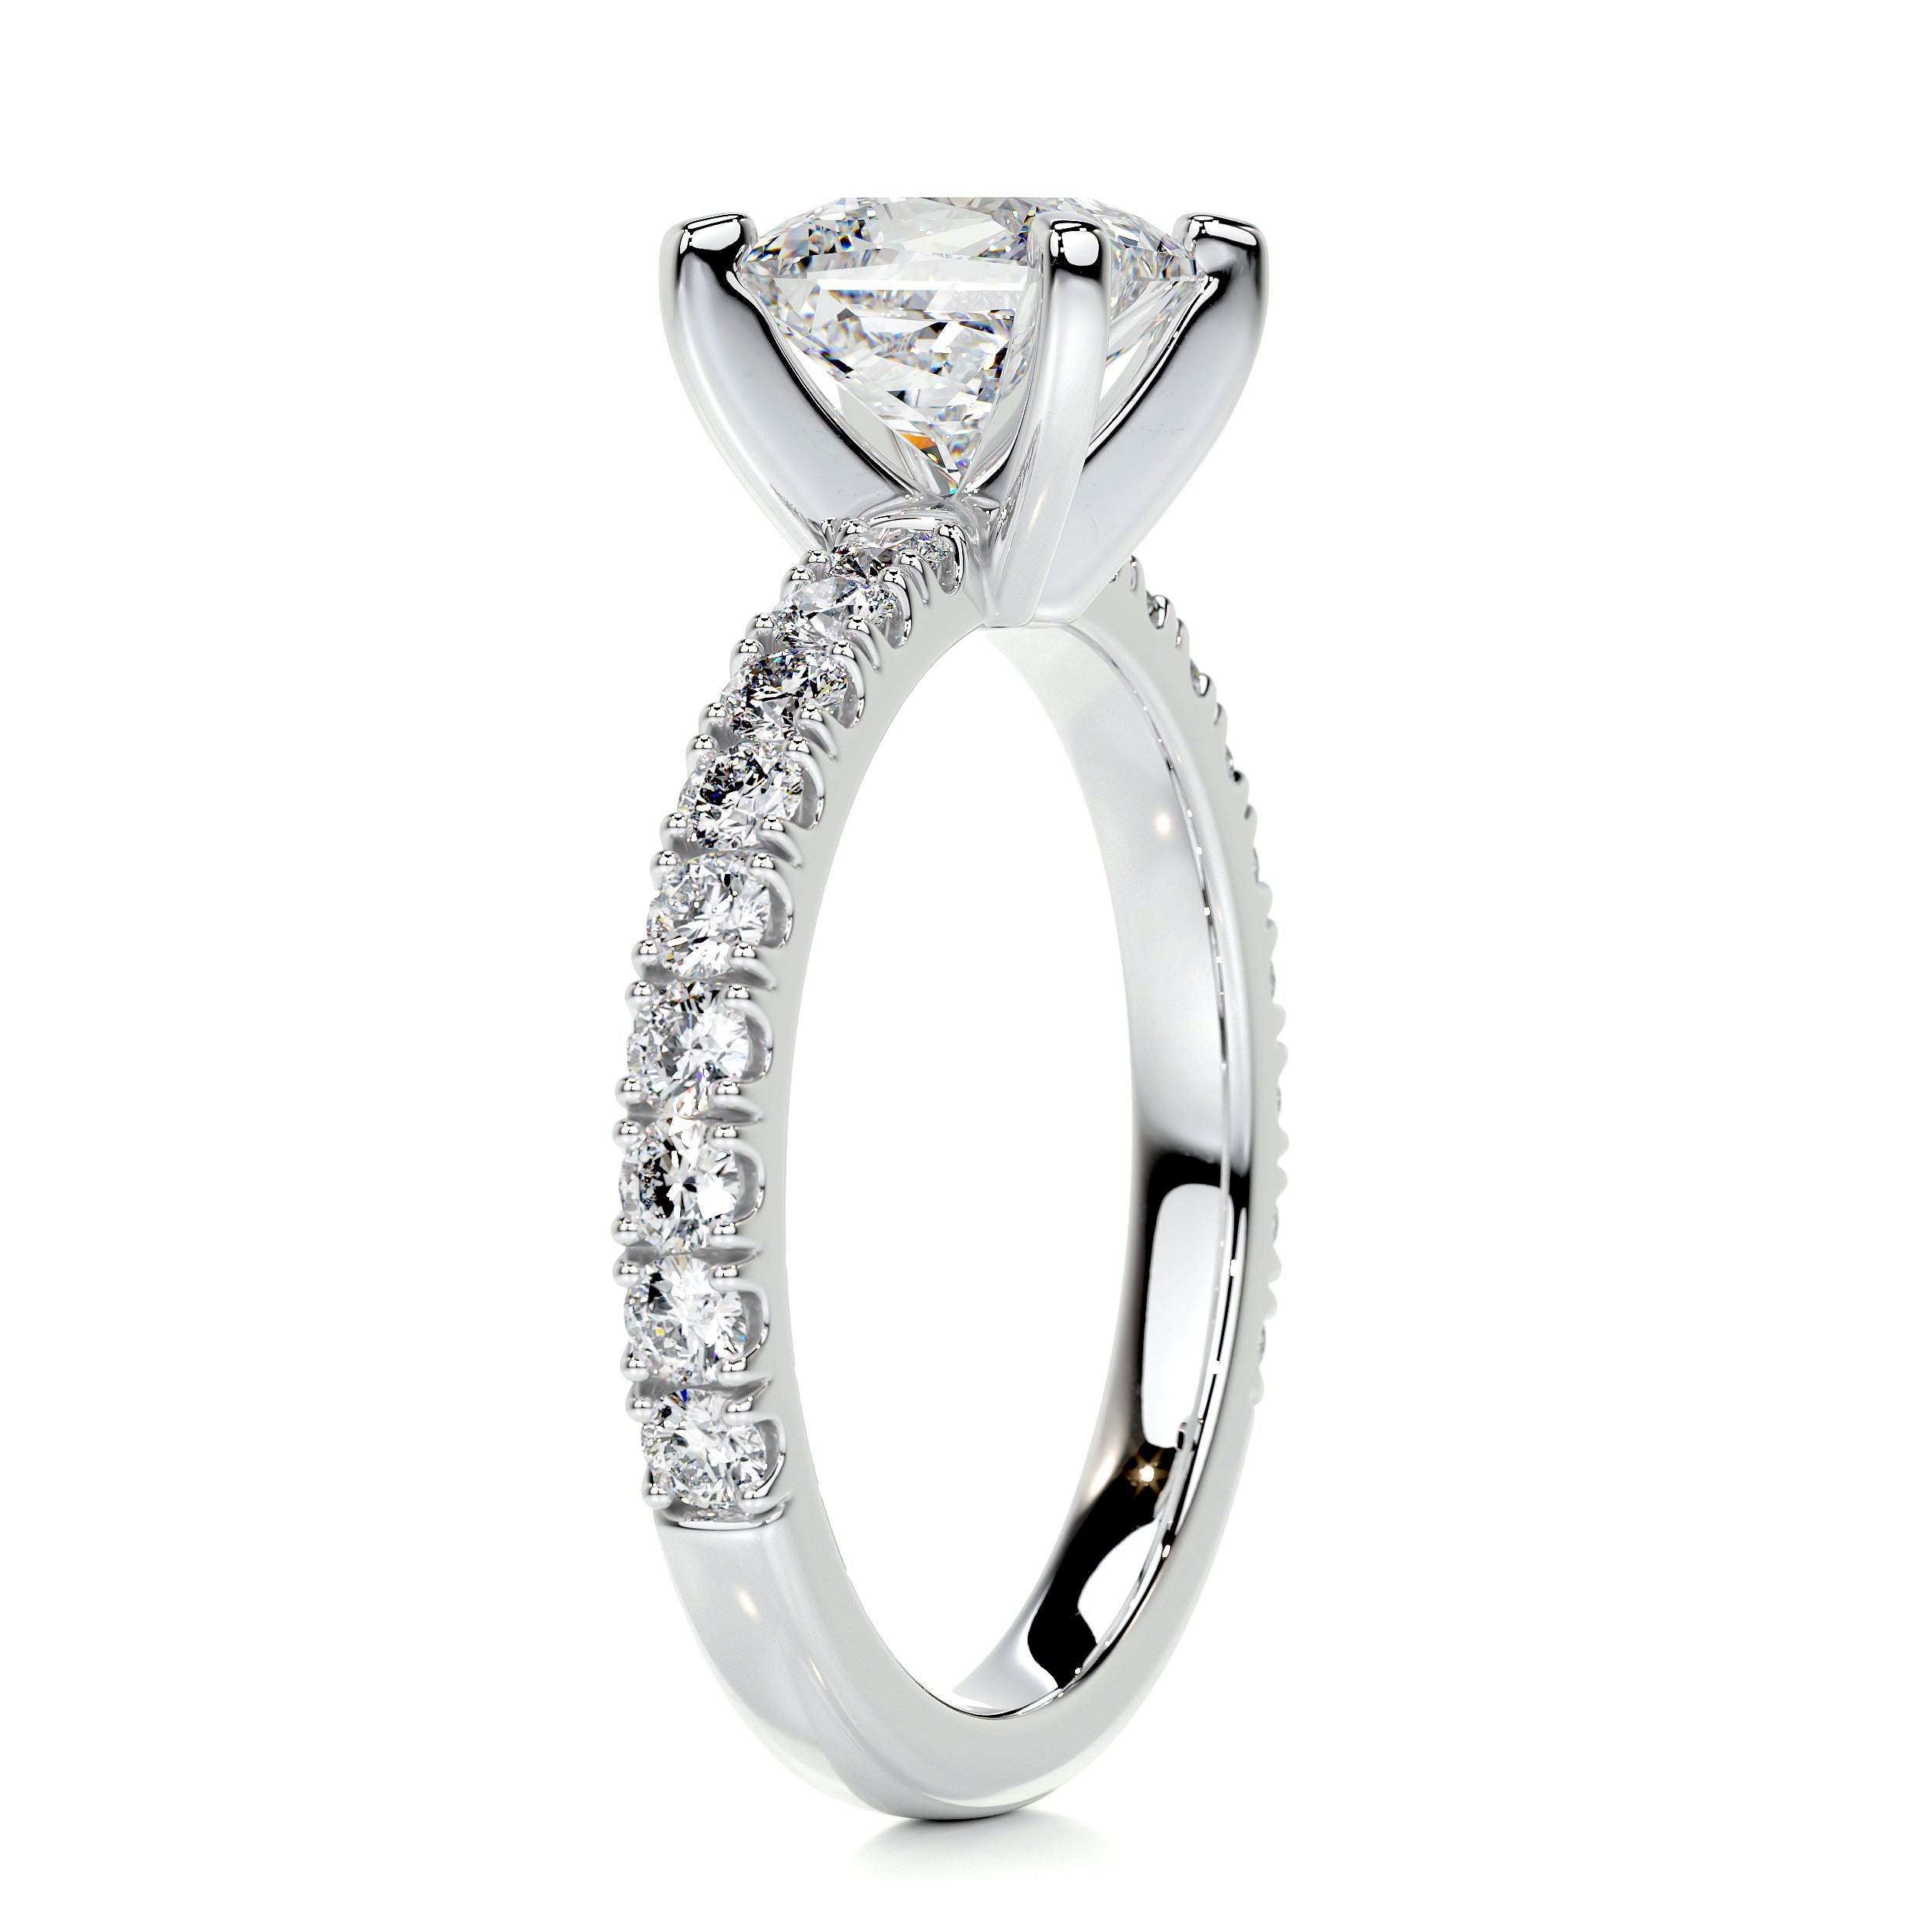 Blair Diamond Engagement Ring   (1.5 Carat) -14K White Gold